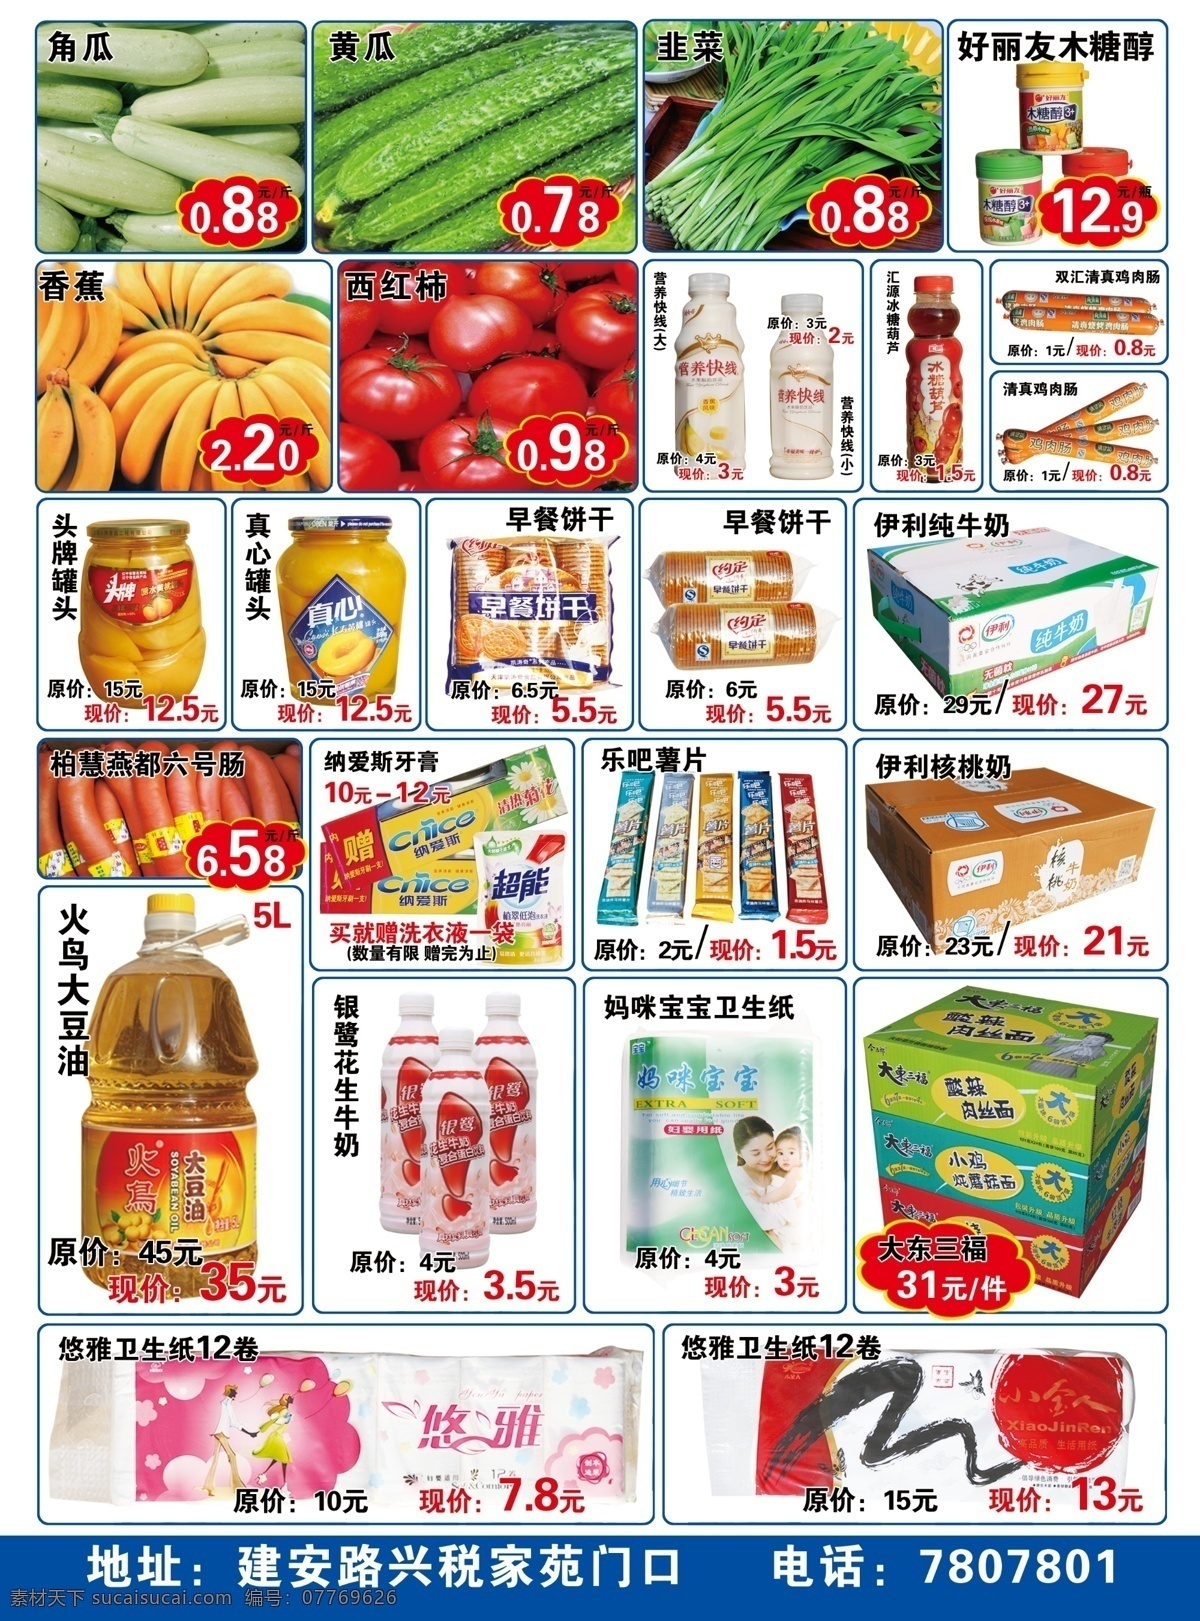 超市海报 51 特价 海报 超市 优惠 宣传单 分层 白色